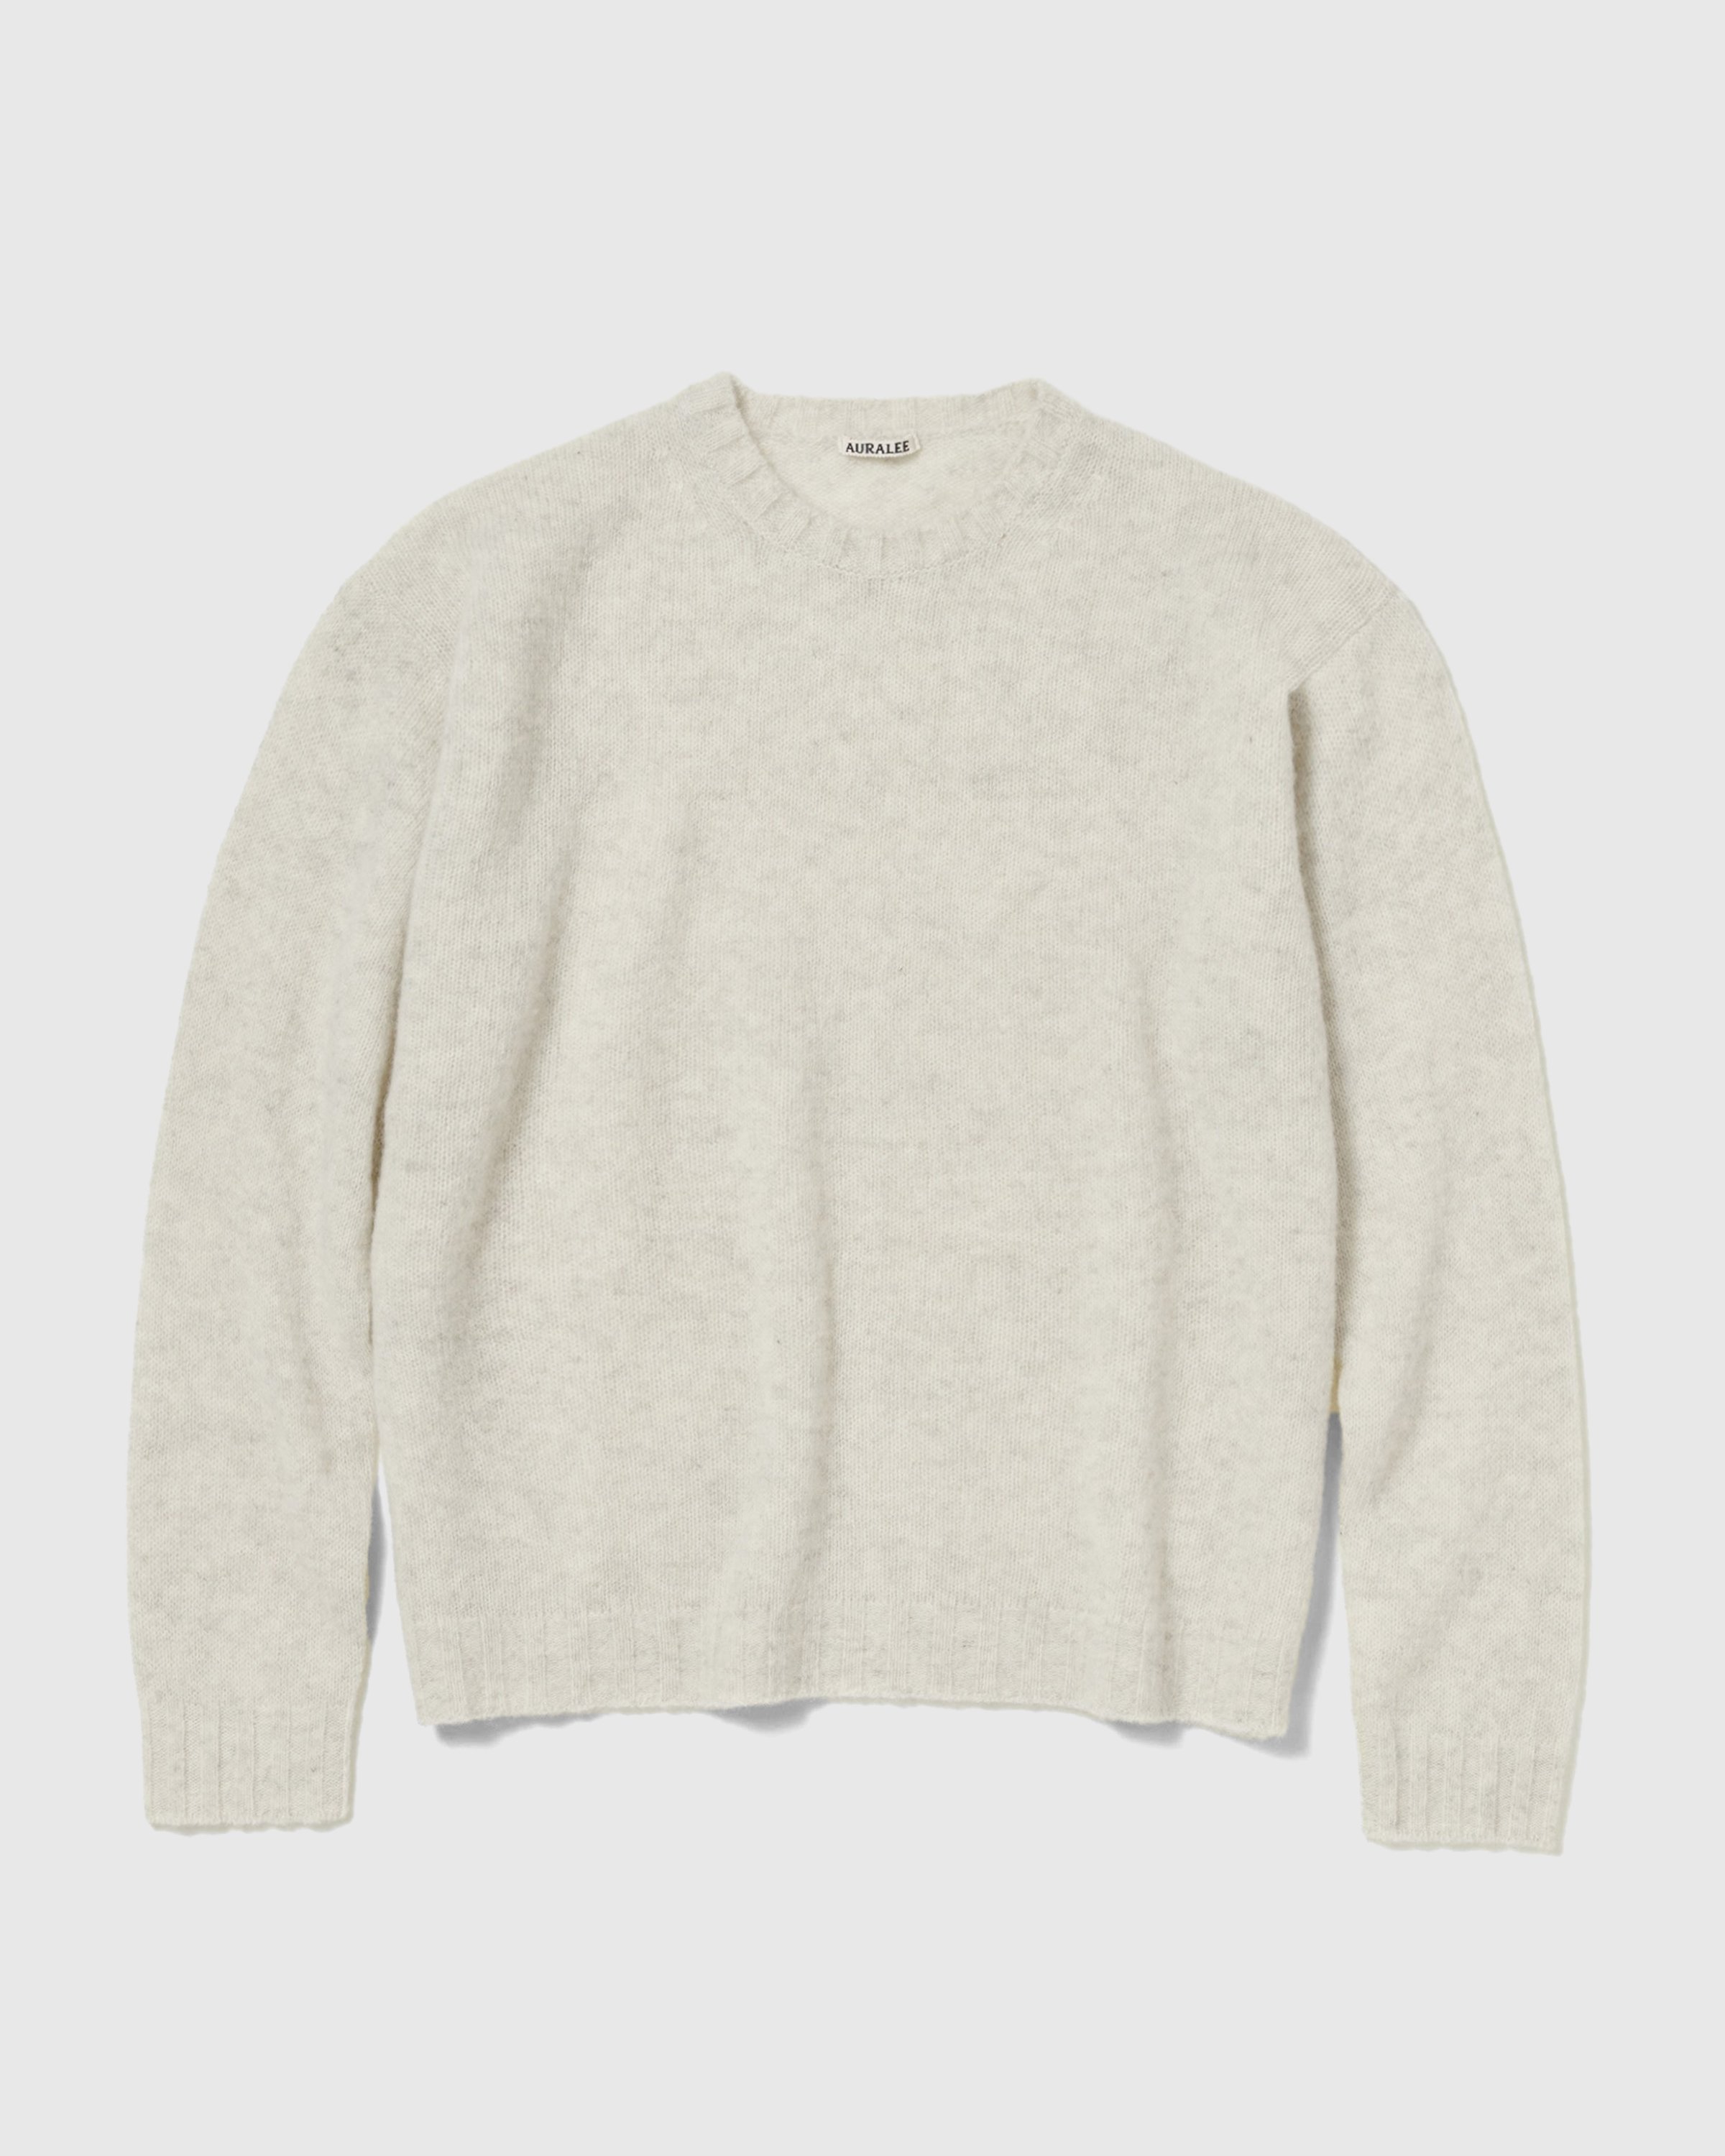 Auralee - Shetland Wool Cashmere Knit - Clothing - White - Image 1